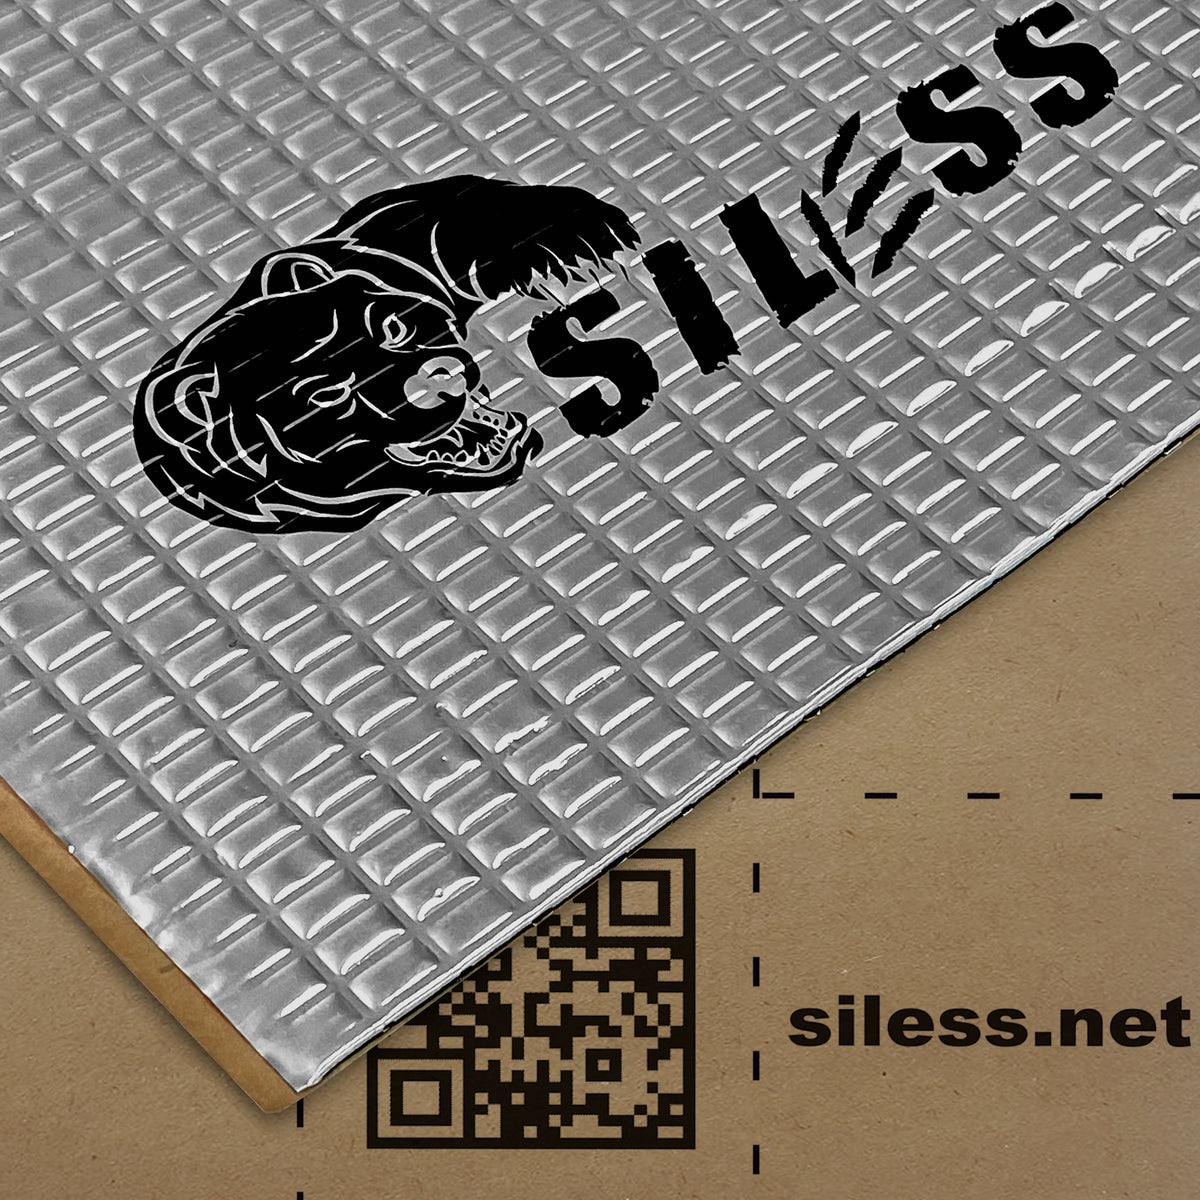 Siless Liner 157 (4 mm) Mil 144 Sqft Car Closed Cell Foam & Heat Insulation Mat - PE Foam Material & Heat Barrier